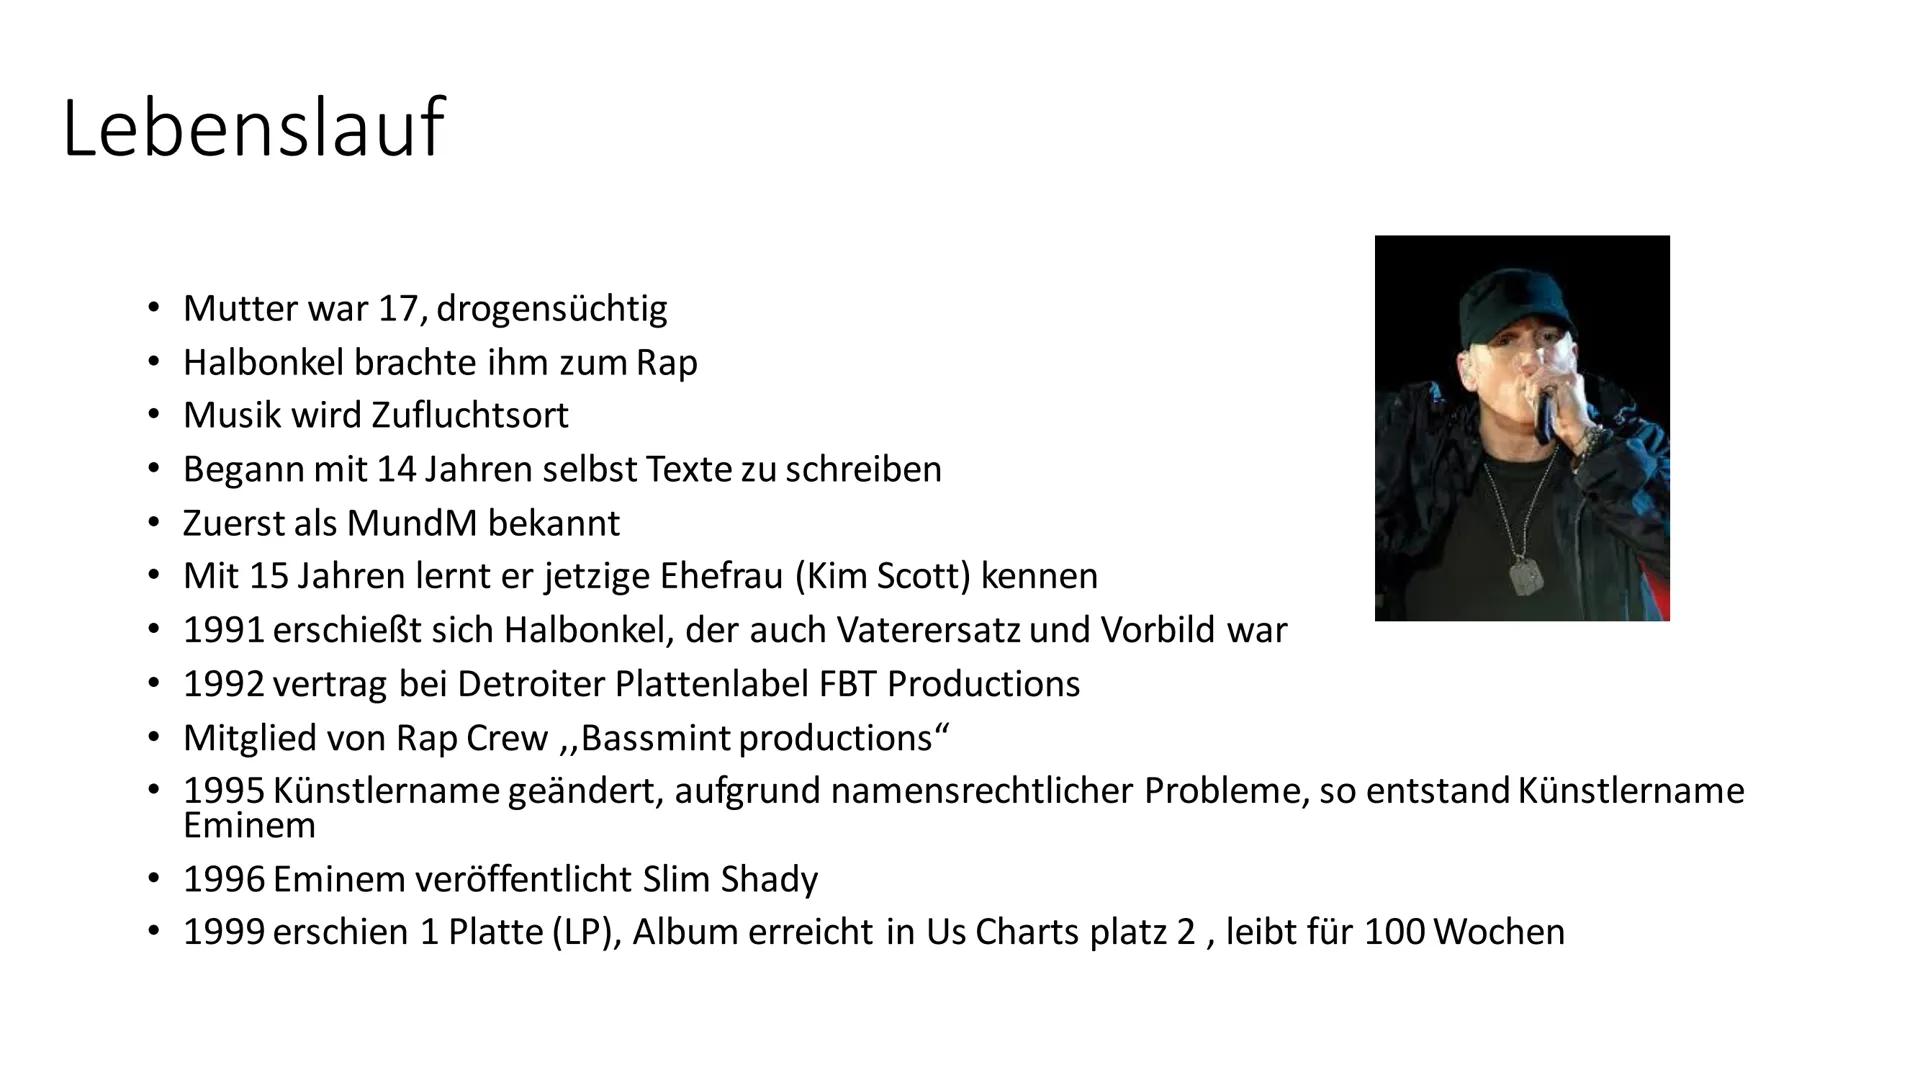 Eminem
5x Inhaltsverzeichnis
●
●
●
●
●
●
●
Steckbrief
Lebenslauf
Alben
Liedfakten
Lyrics
Songanalyse
Unsere Meinung
Quellen
Ende Steckbrief
